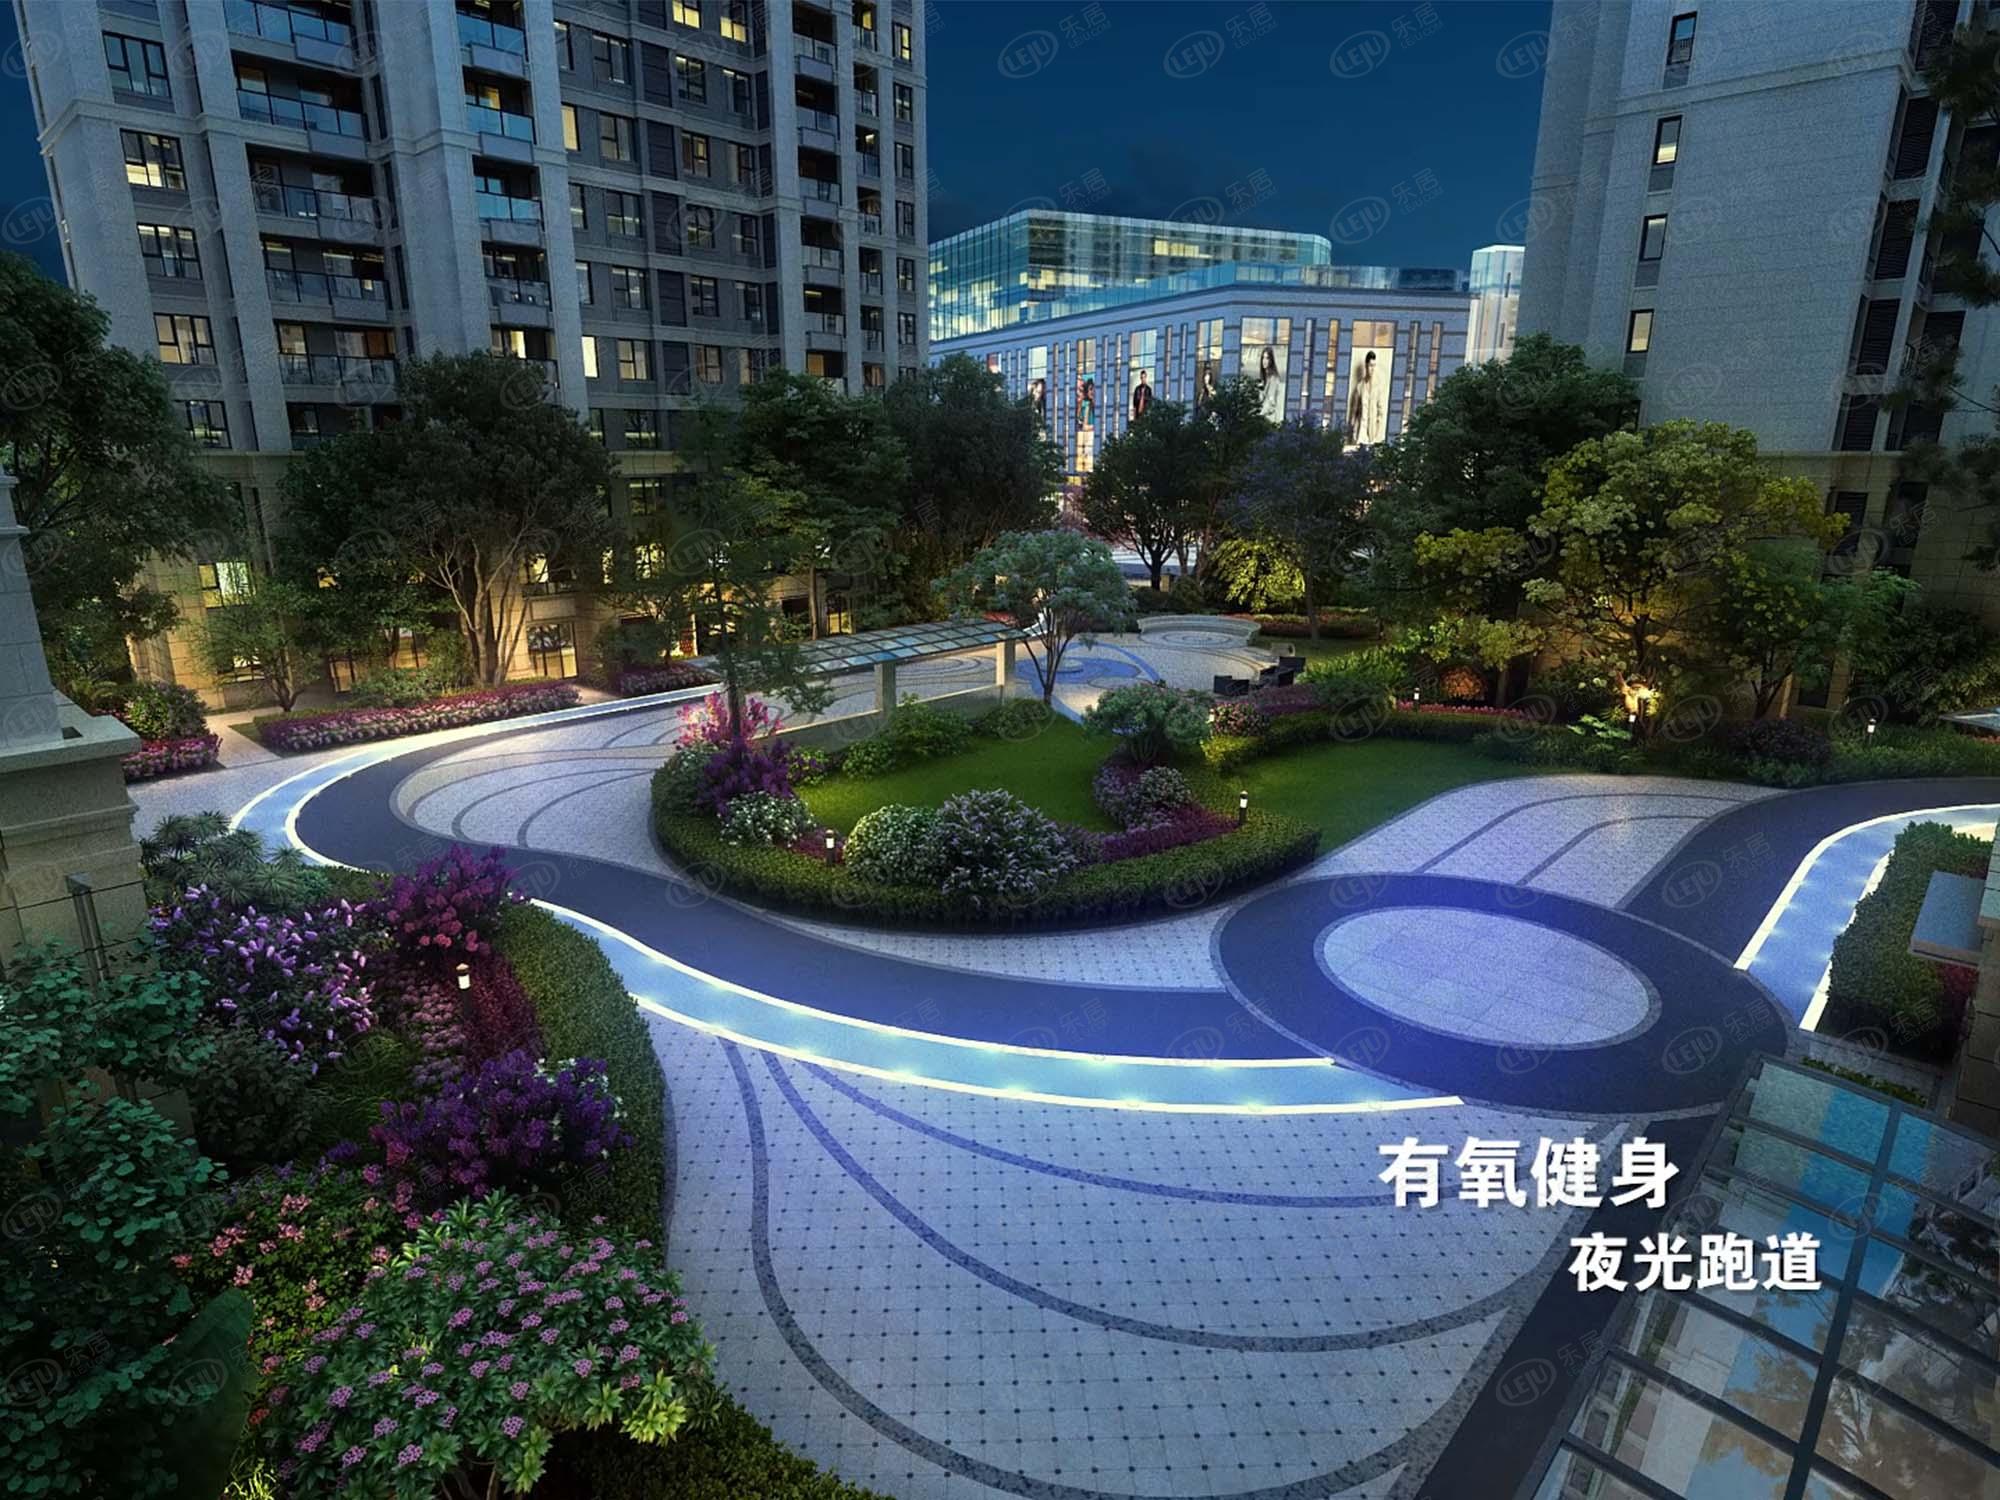 福山西上海崑玉嶺第，位于开发区长江路288号隶属于西部副中心，预估价格为14500/平米左右。